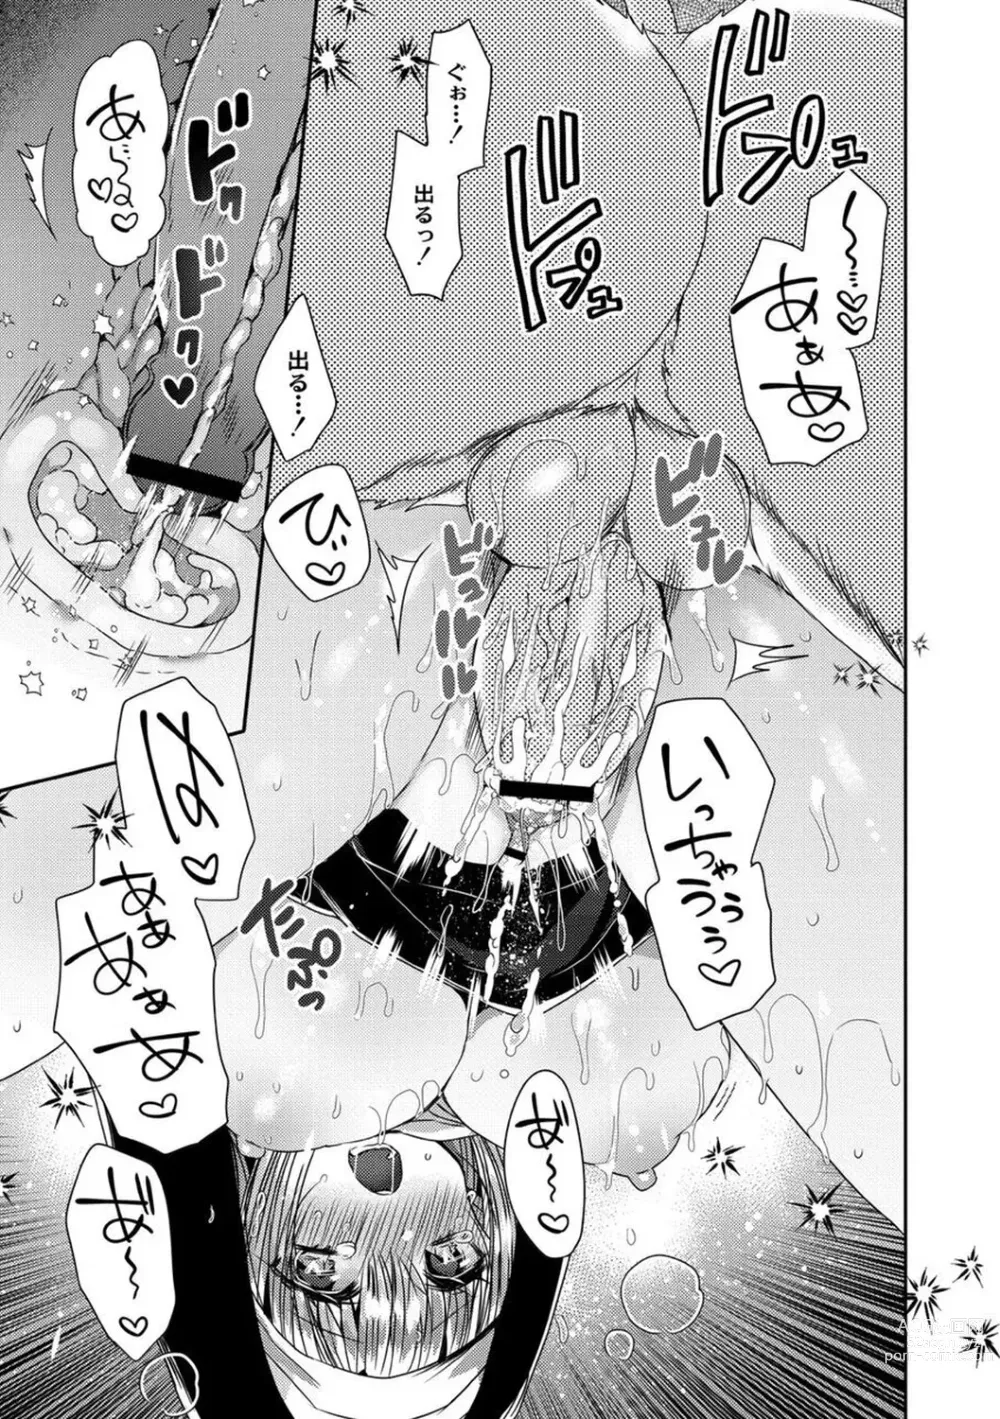 Page 23 of manga Junai Holic